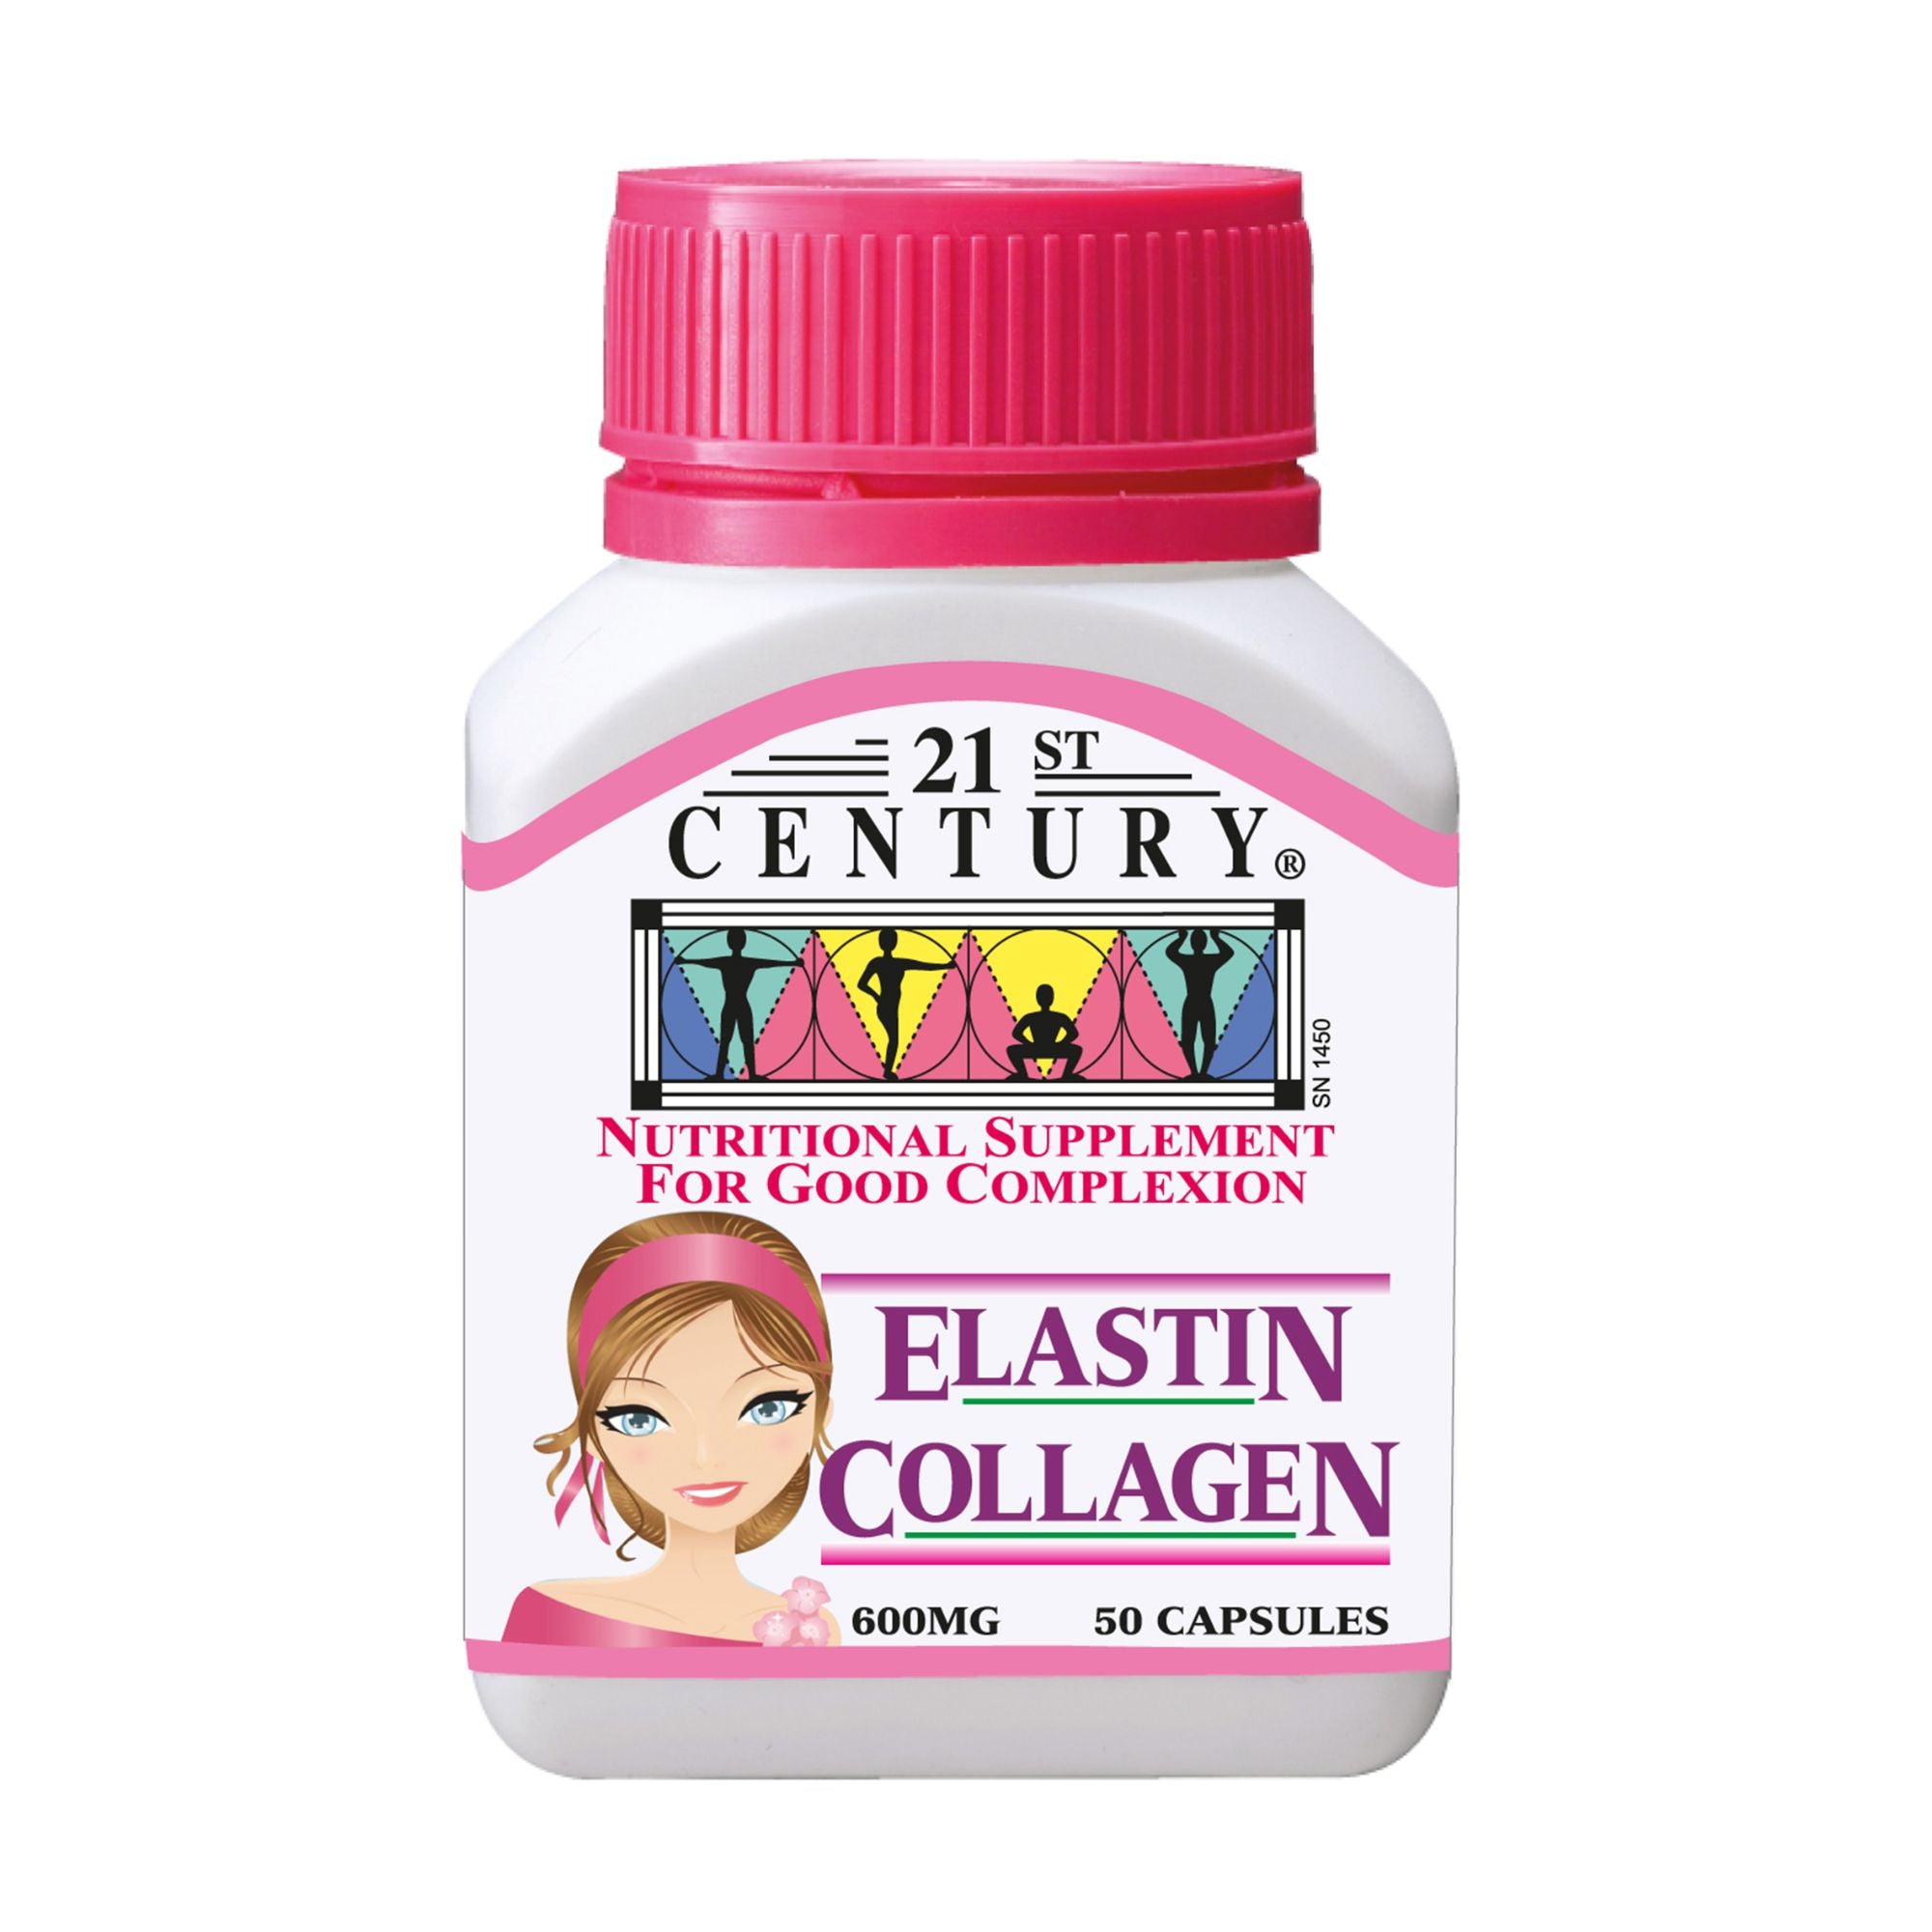 21ST CENTURY Elastin Collagen 600mg 50 Capsules